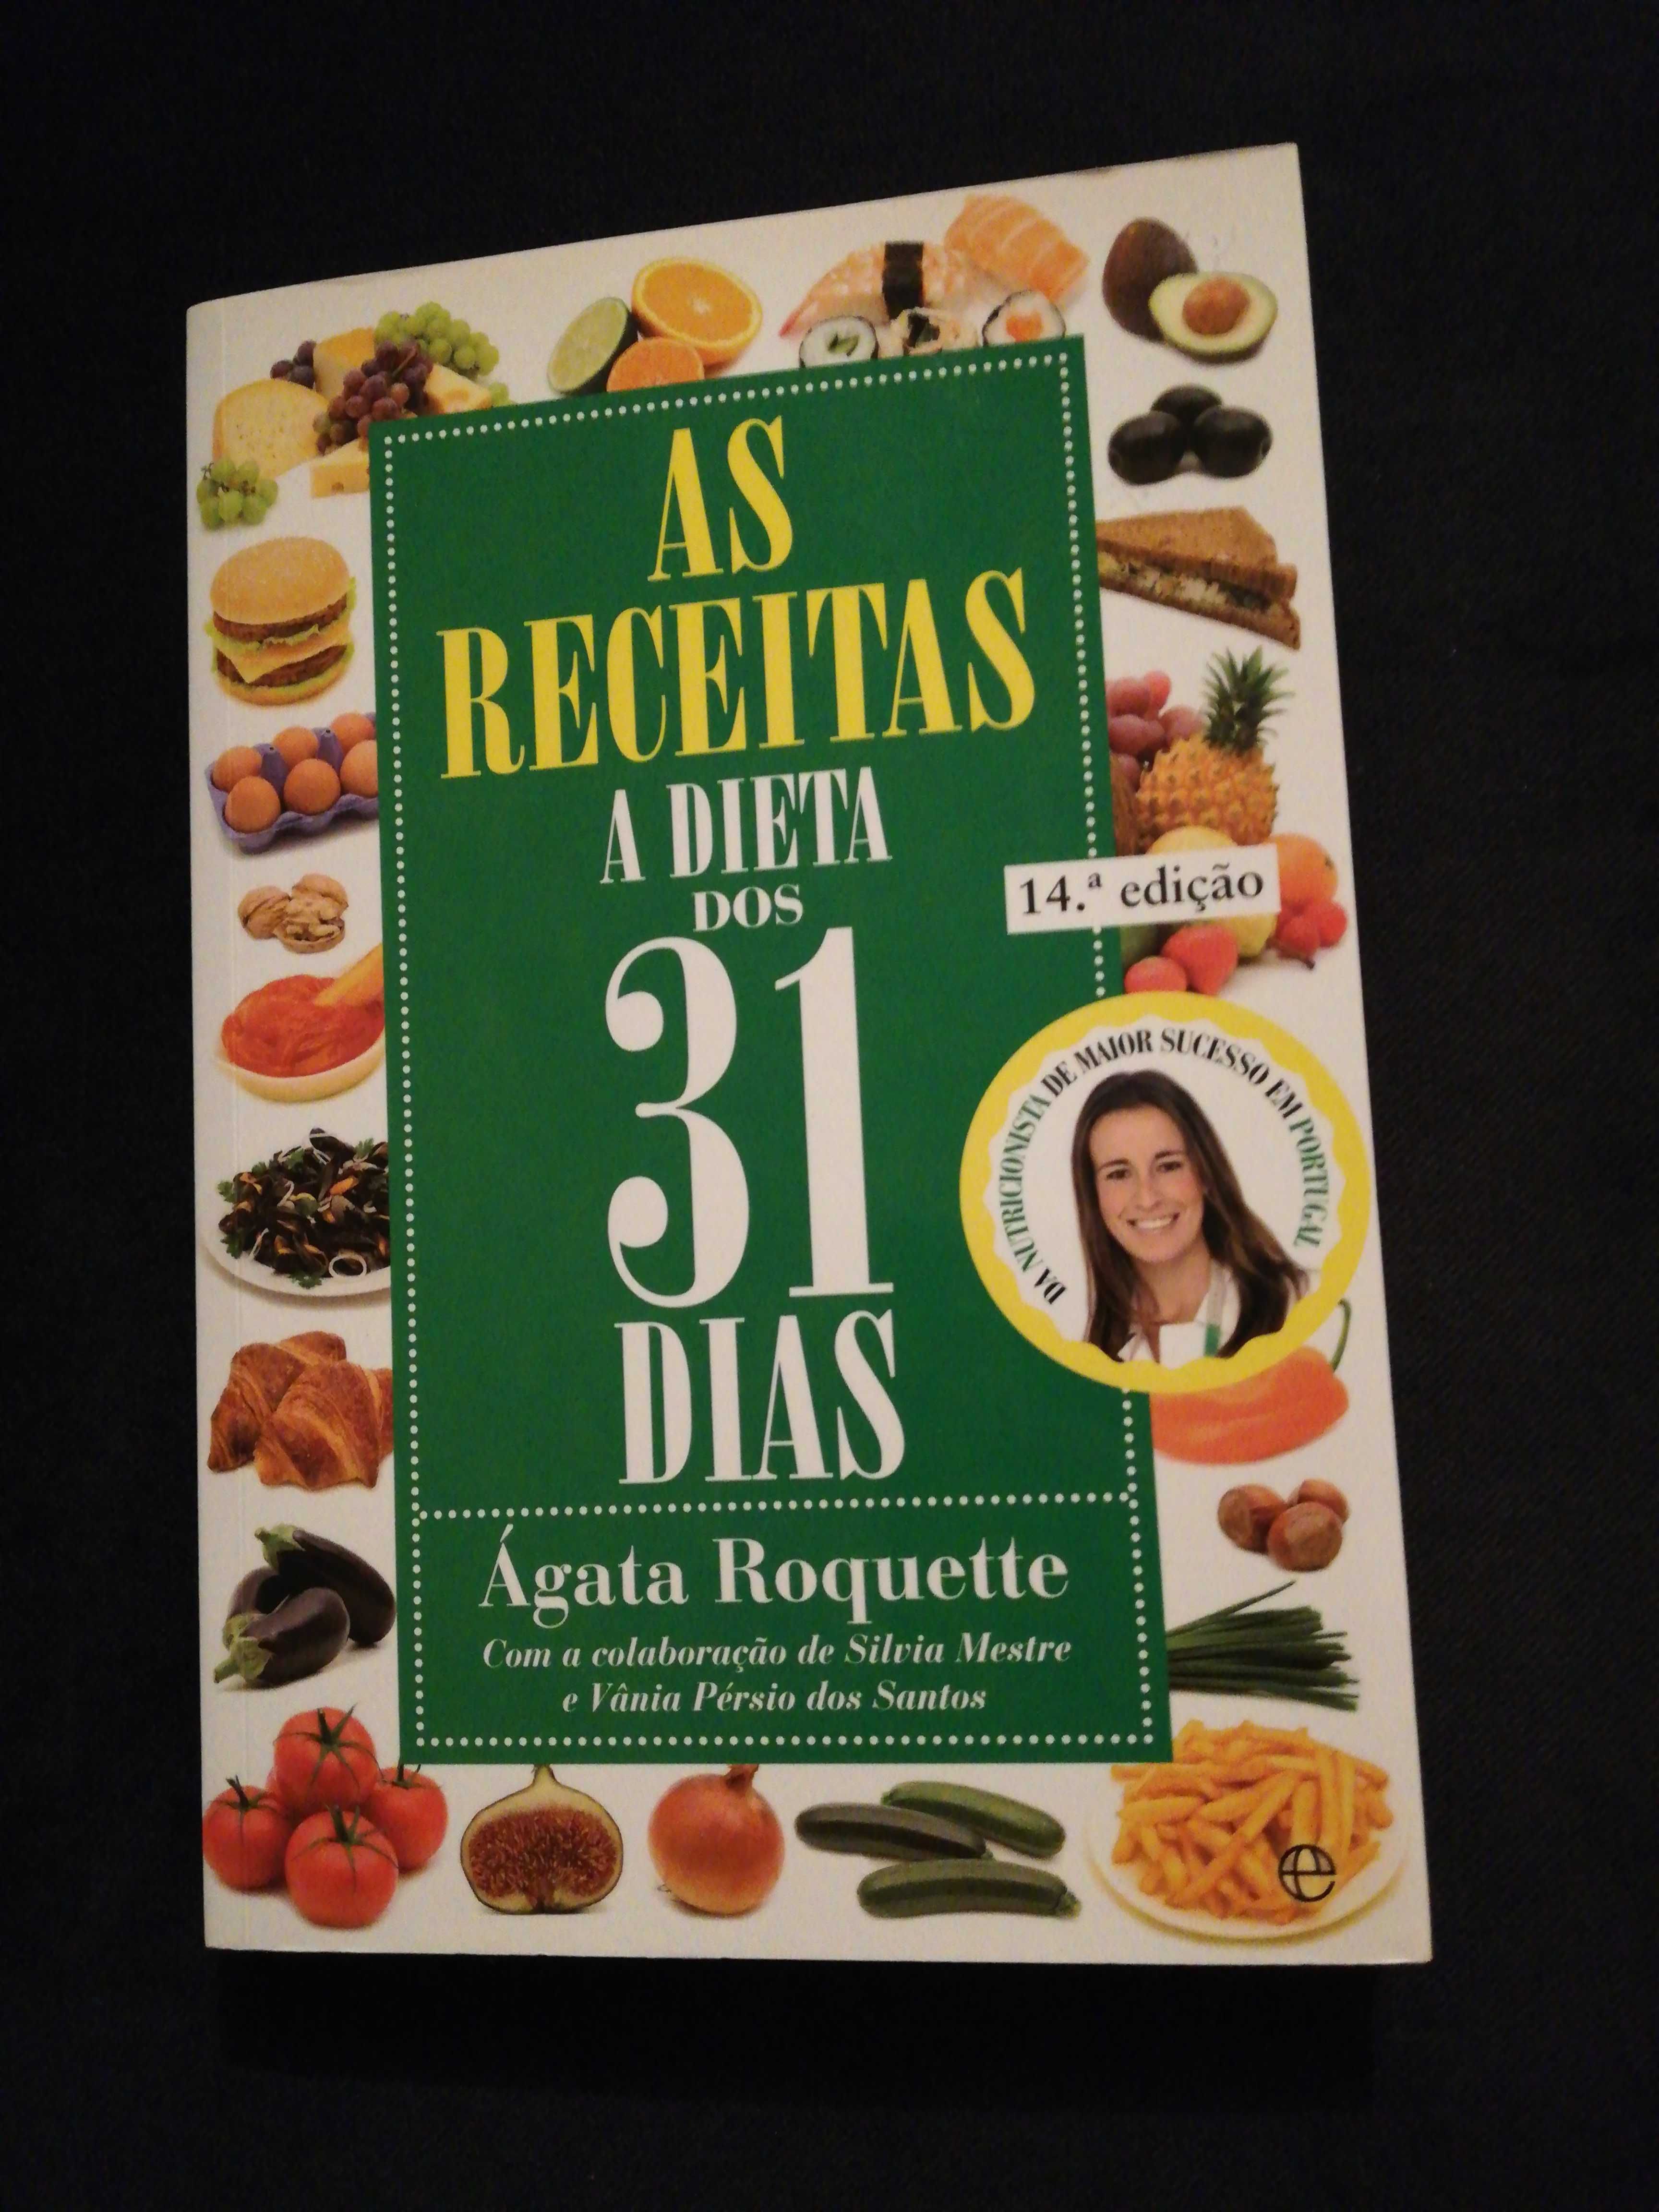 Livro 'As receitas - A dieta dos 31 dias' - Ágata Roquete